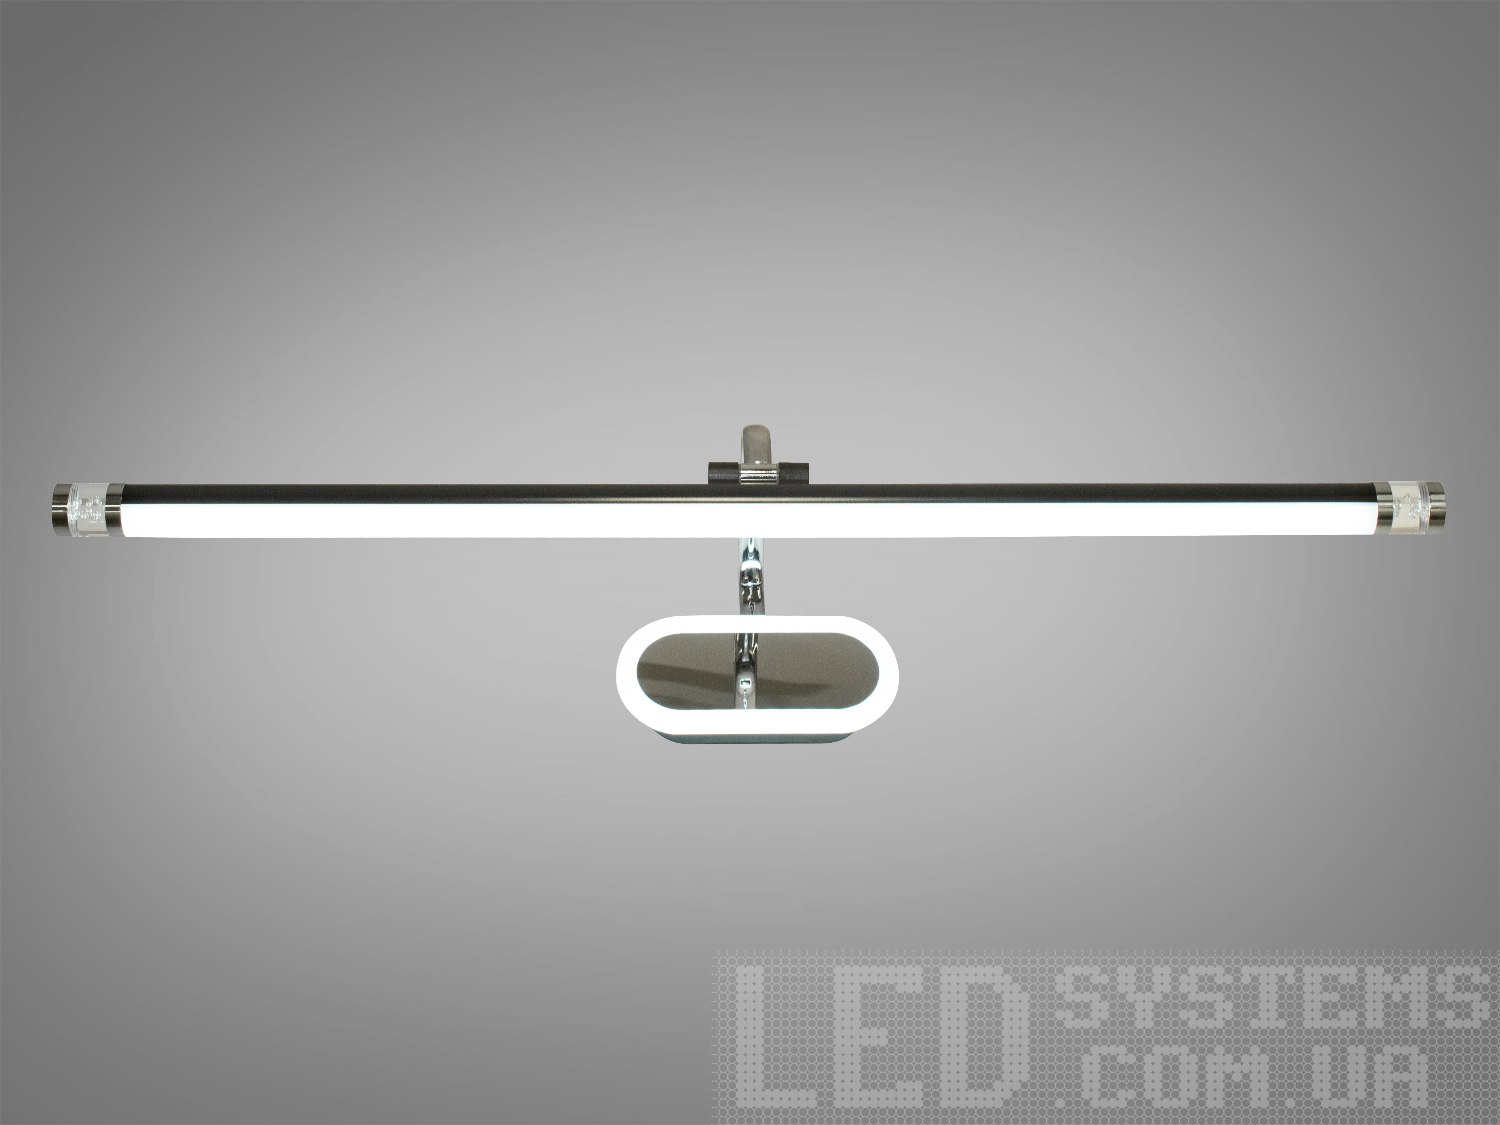 Унікальне LED підсвічування для виразних картин та дзеркал призначене для акцентного (елементного) підсвічування в інтер'єрі - підсвічування дзеркал як у приміщенні, так і у ванній кімнаті, для картин, витворів мистецтва, стінних ніш.У цій серії всі світильники оснащені світлодіодними енергозберігаючими лампами. Які за дуже низької споживаної потужності створюють потужний світловий потік.
Кріпиться до будь-яких поверхонь стін універсальним кріпленням на монтажну планку.